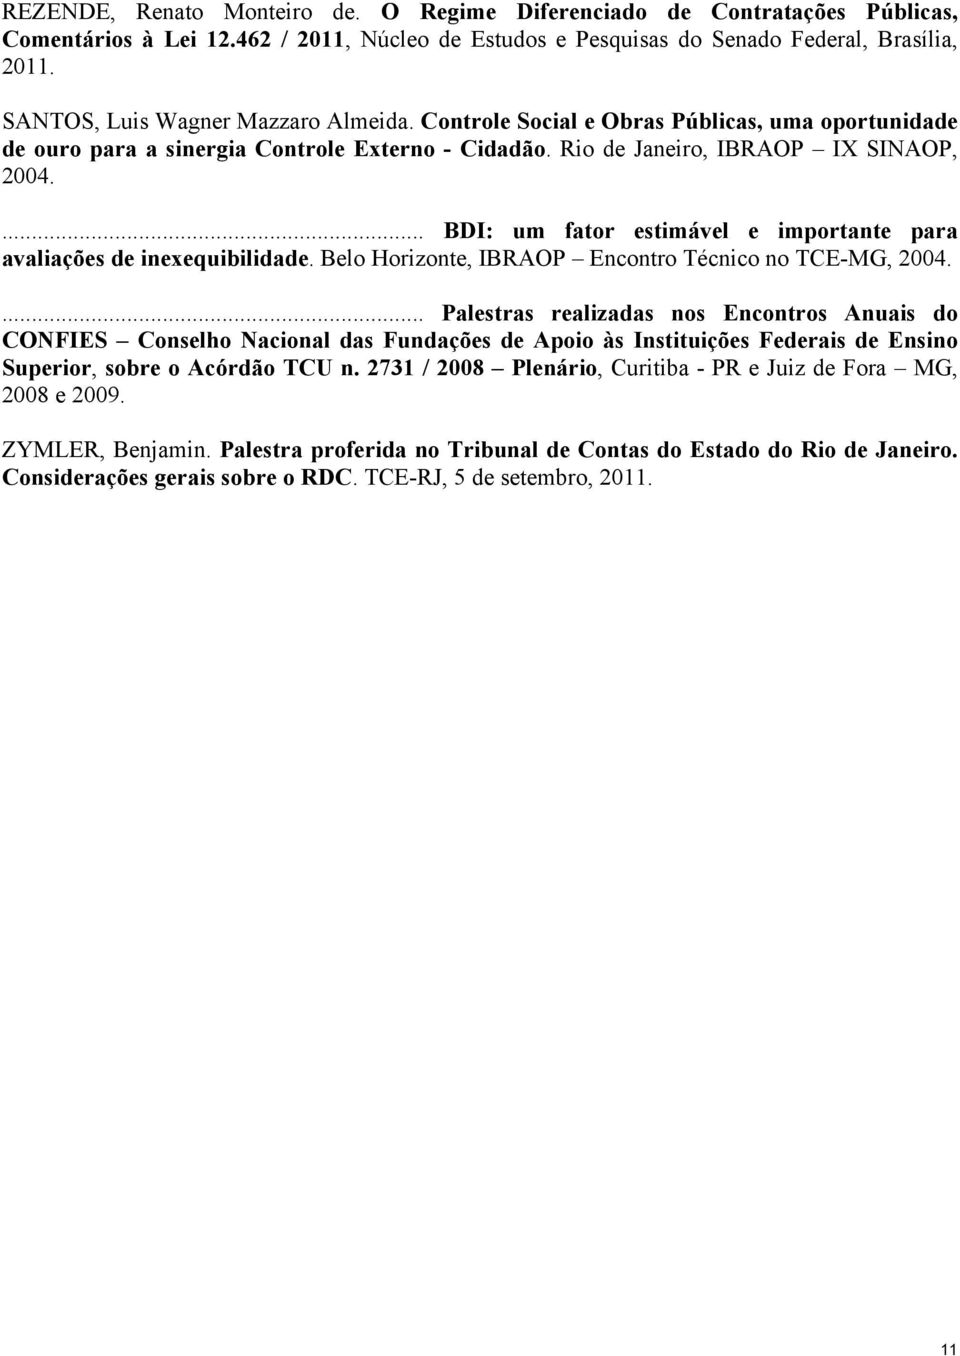 avaliações de inexequibilidade Belo Horizonte, IBRAOP Encontro Técnico no TCE-MG, 2004 Palestras realizadas nos Encontros Anuais do CONFIES Conselho Nacional das Fundações de Apoio às Instituições